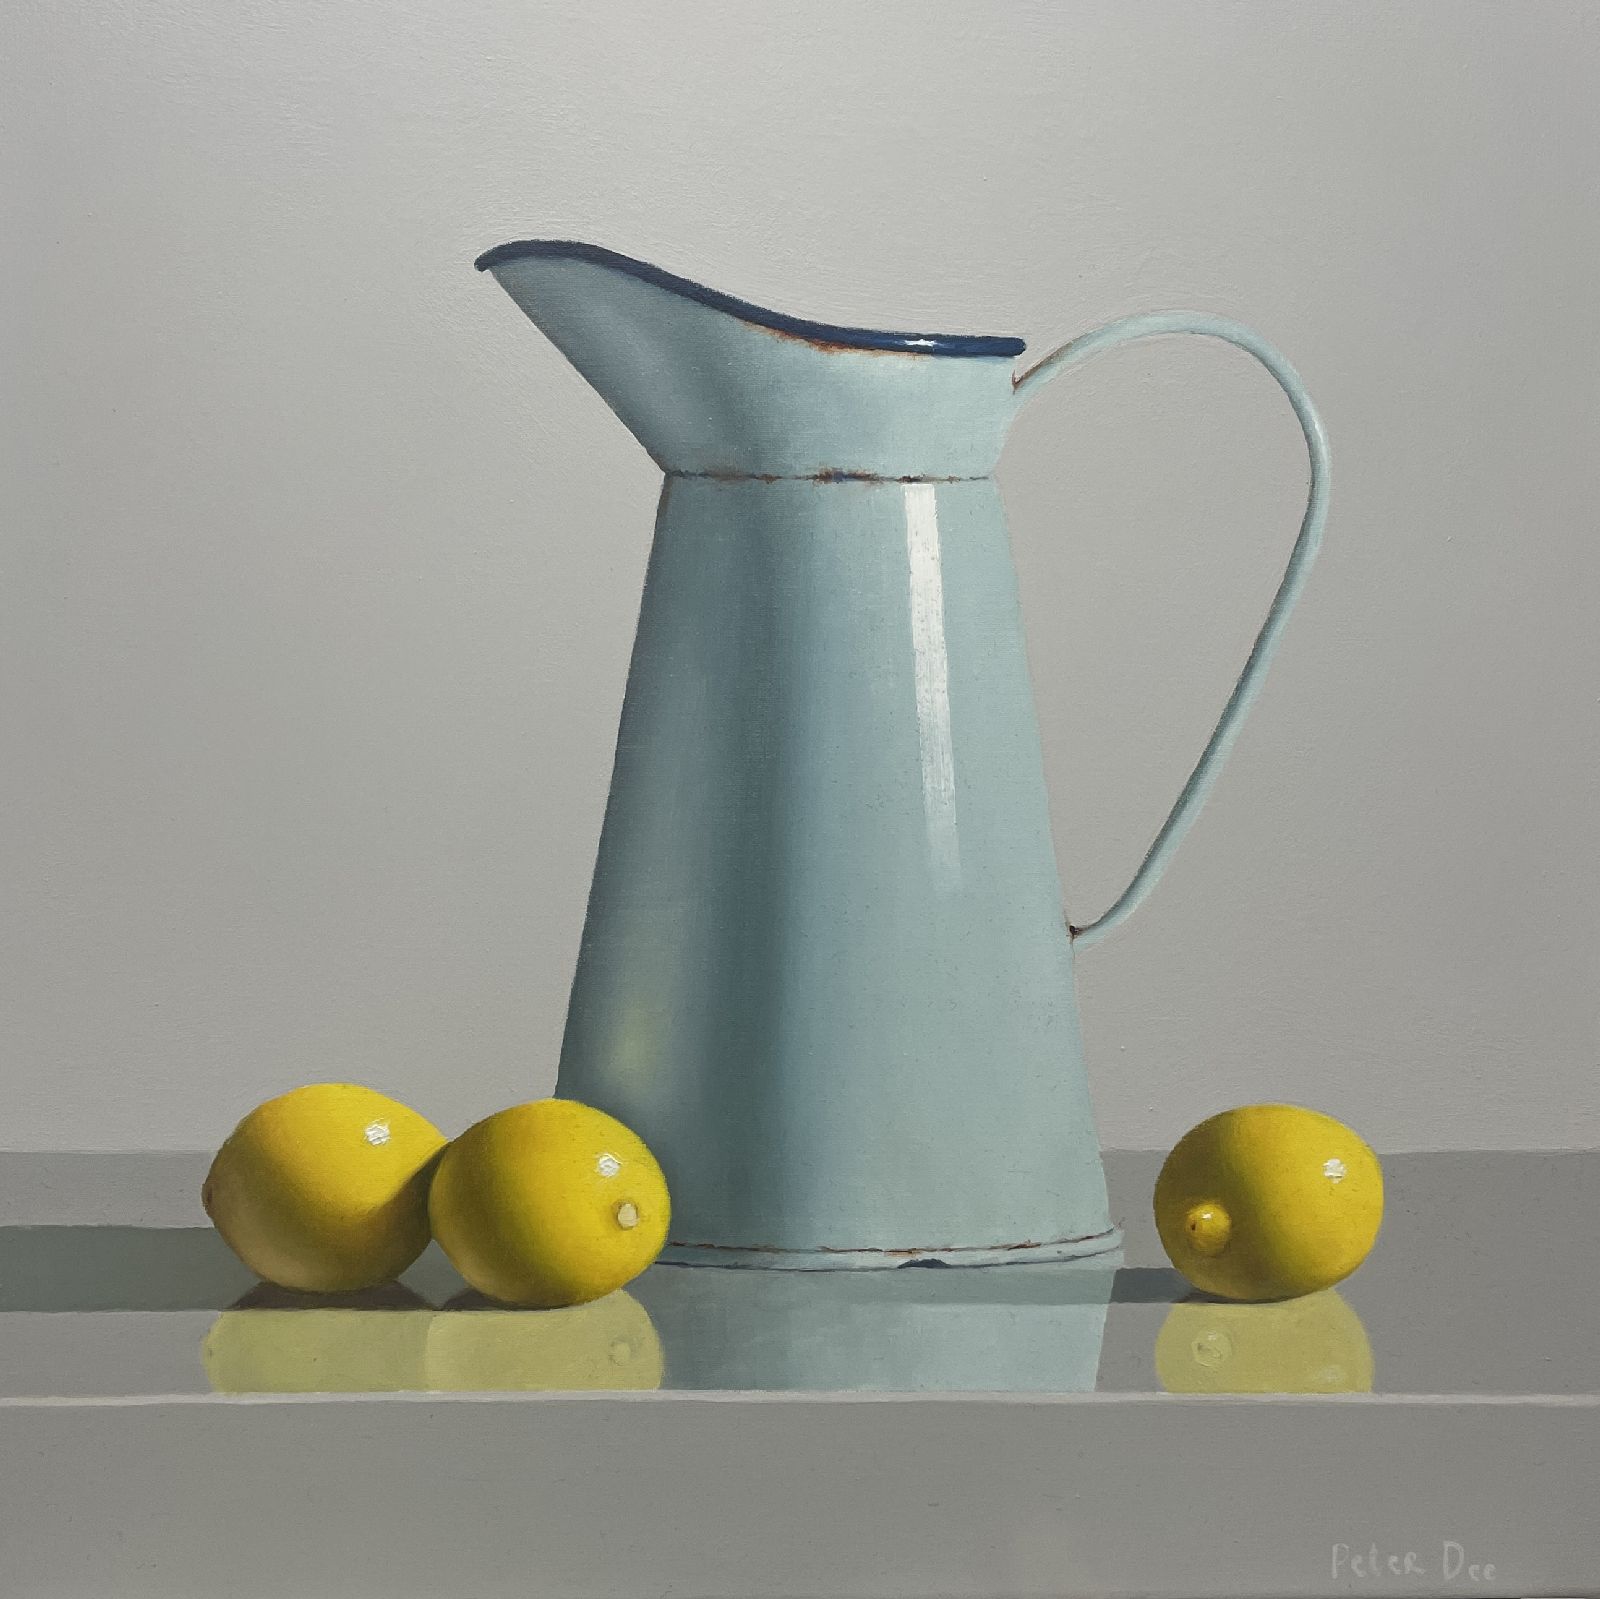 Peter Dee - Vintage enamelware with lemons